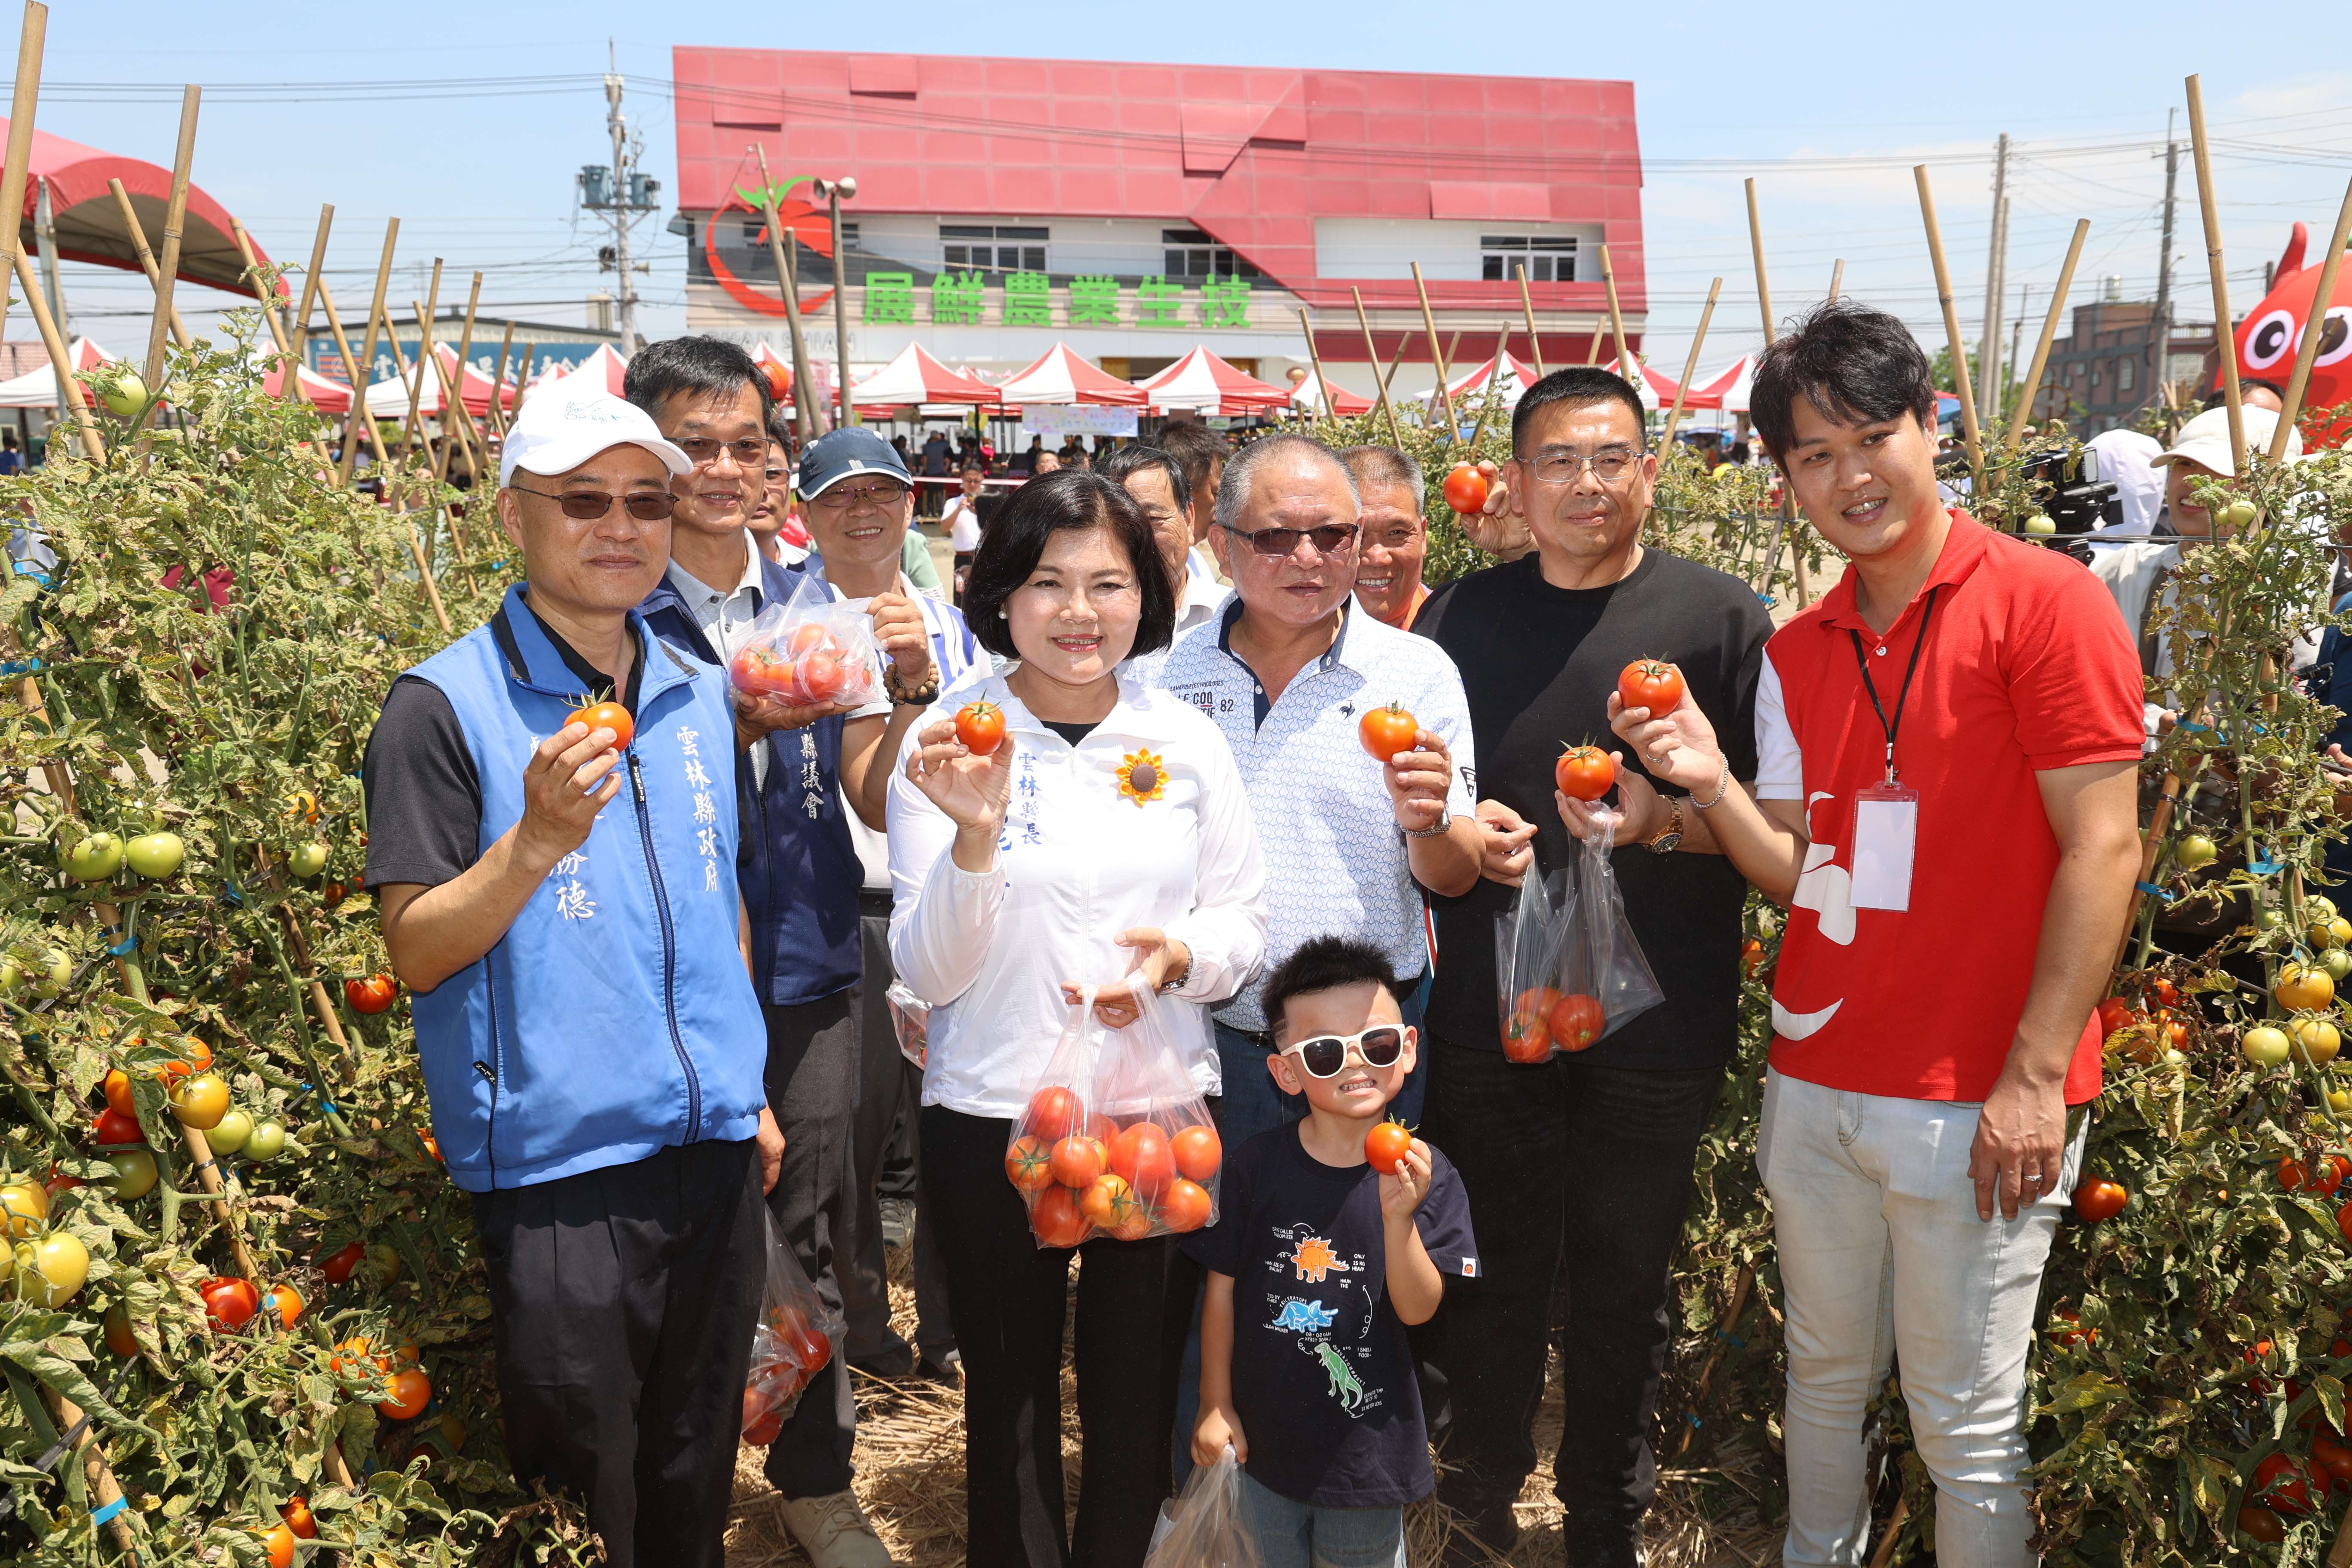 第一屆小紅牛「喜番生活節」登場 張麗善縣長邀民眾品味牛番茄吃在地、食當季